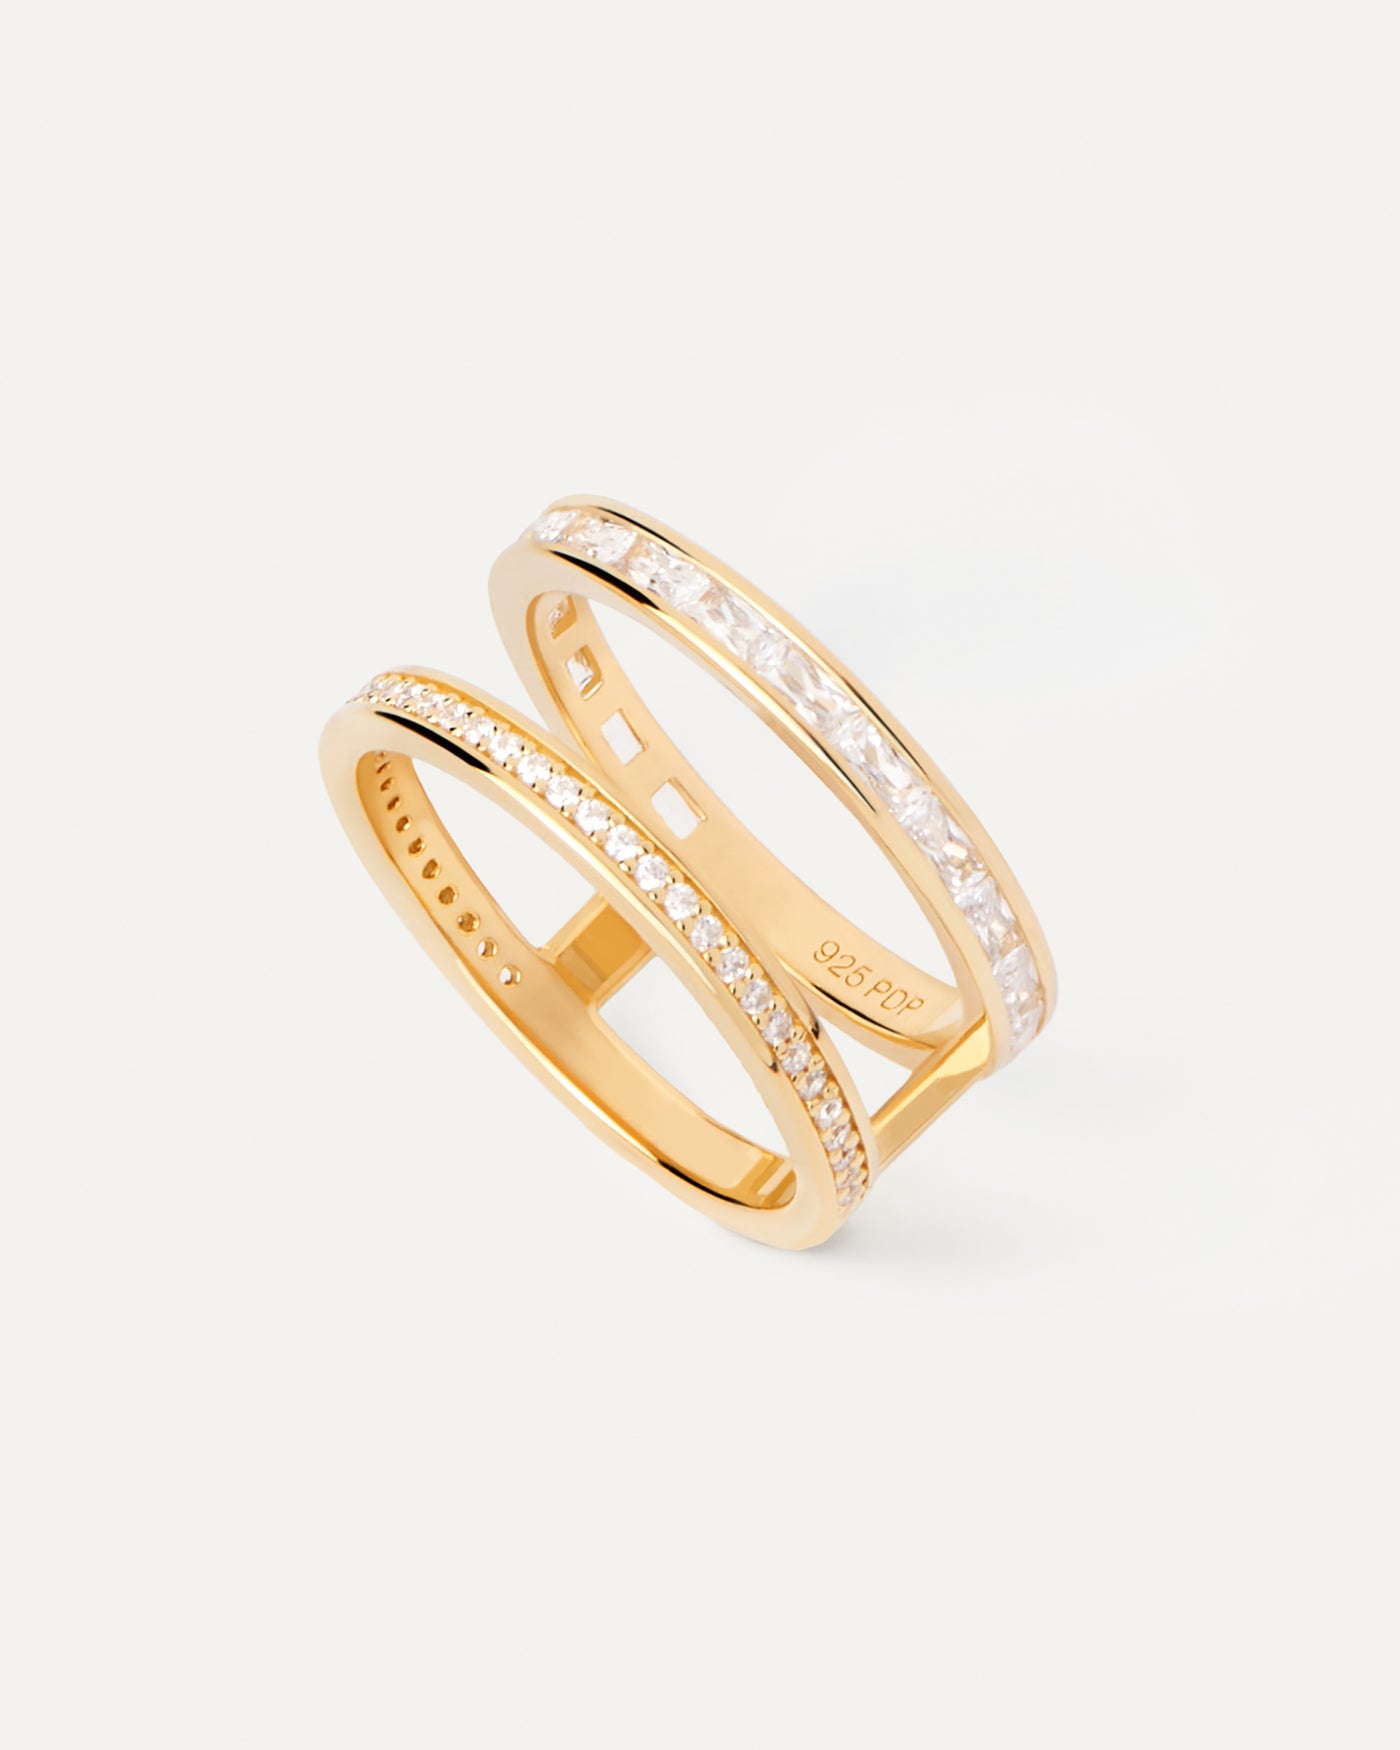 Bianca Ring. Vergoldeter halbgeometrischer Ring mit weißem Zirkon besetzt. Erhalten Sie die neuesten Produkte von PDPAOLA. Geben Sie Ihre Bestellung sicher auf und erhalten Sie diesen Bestseller.